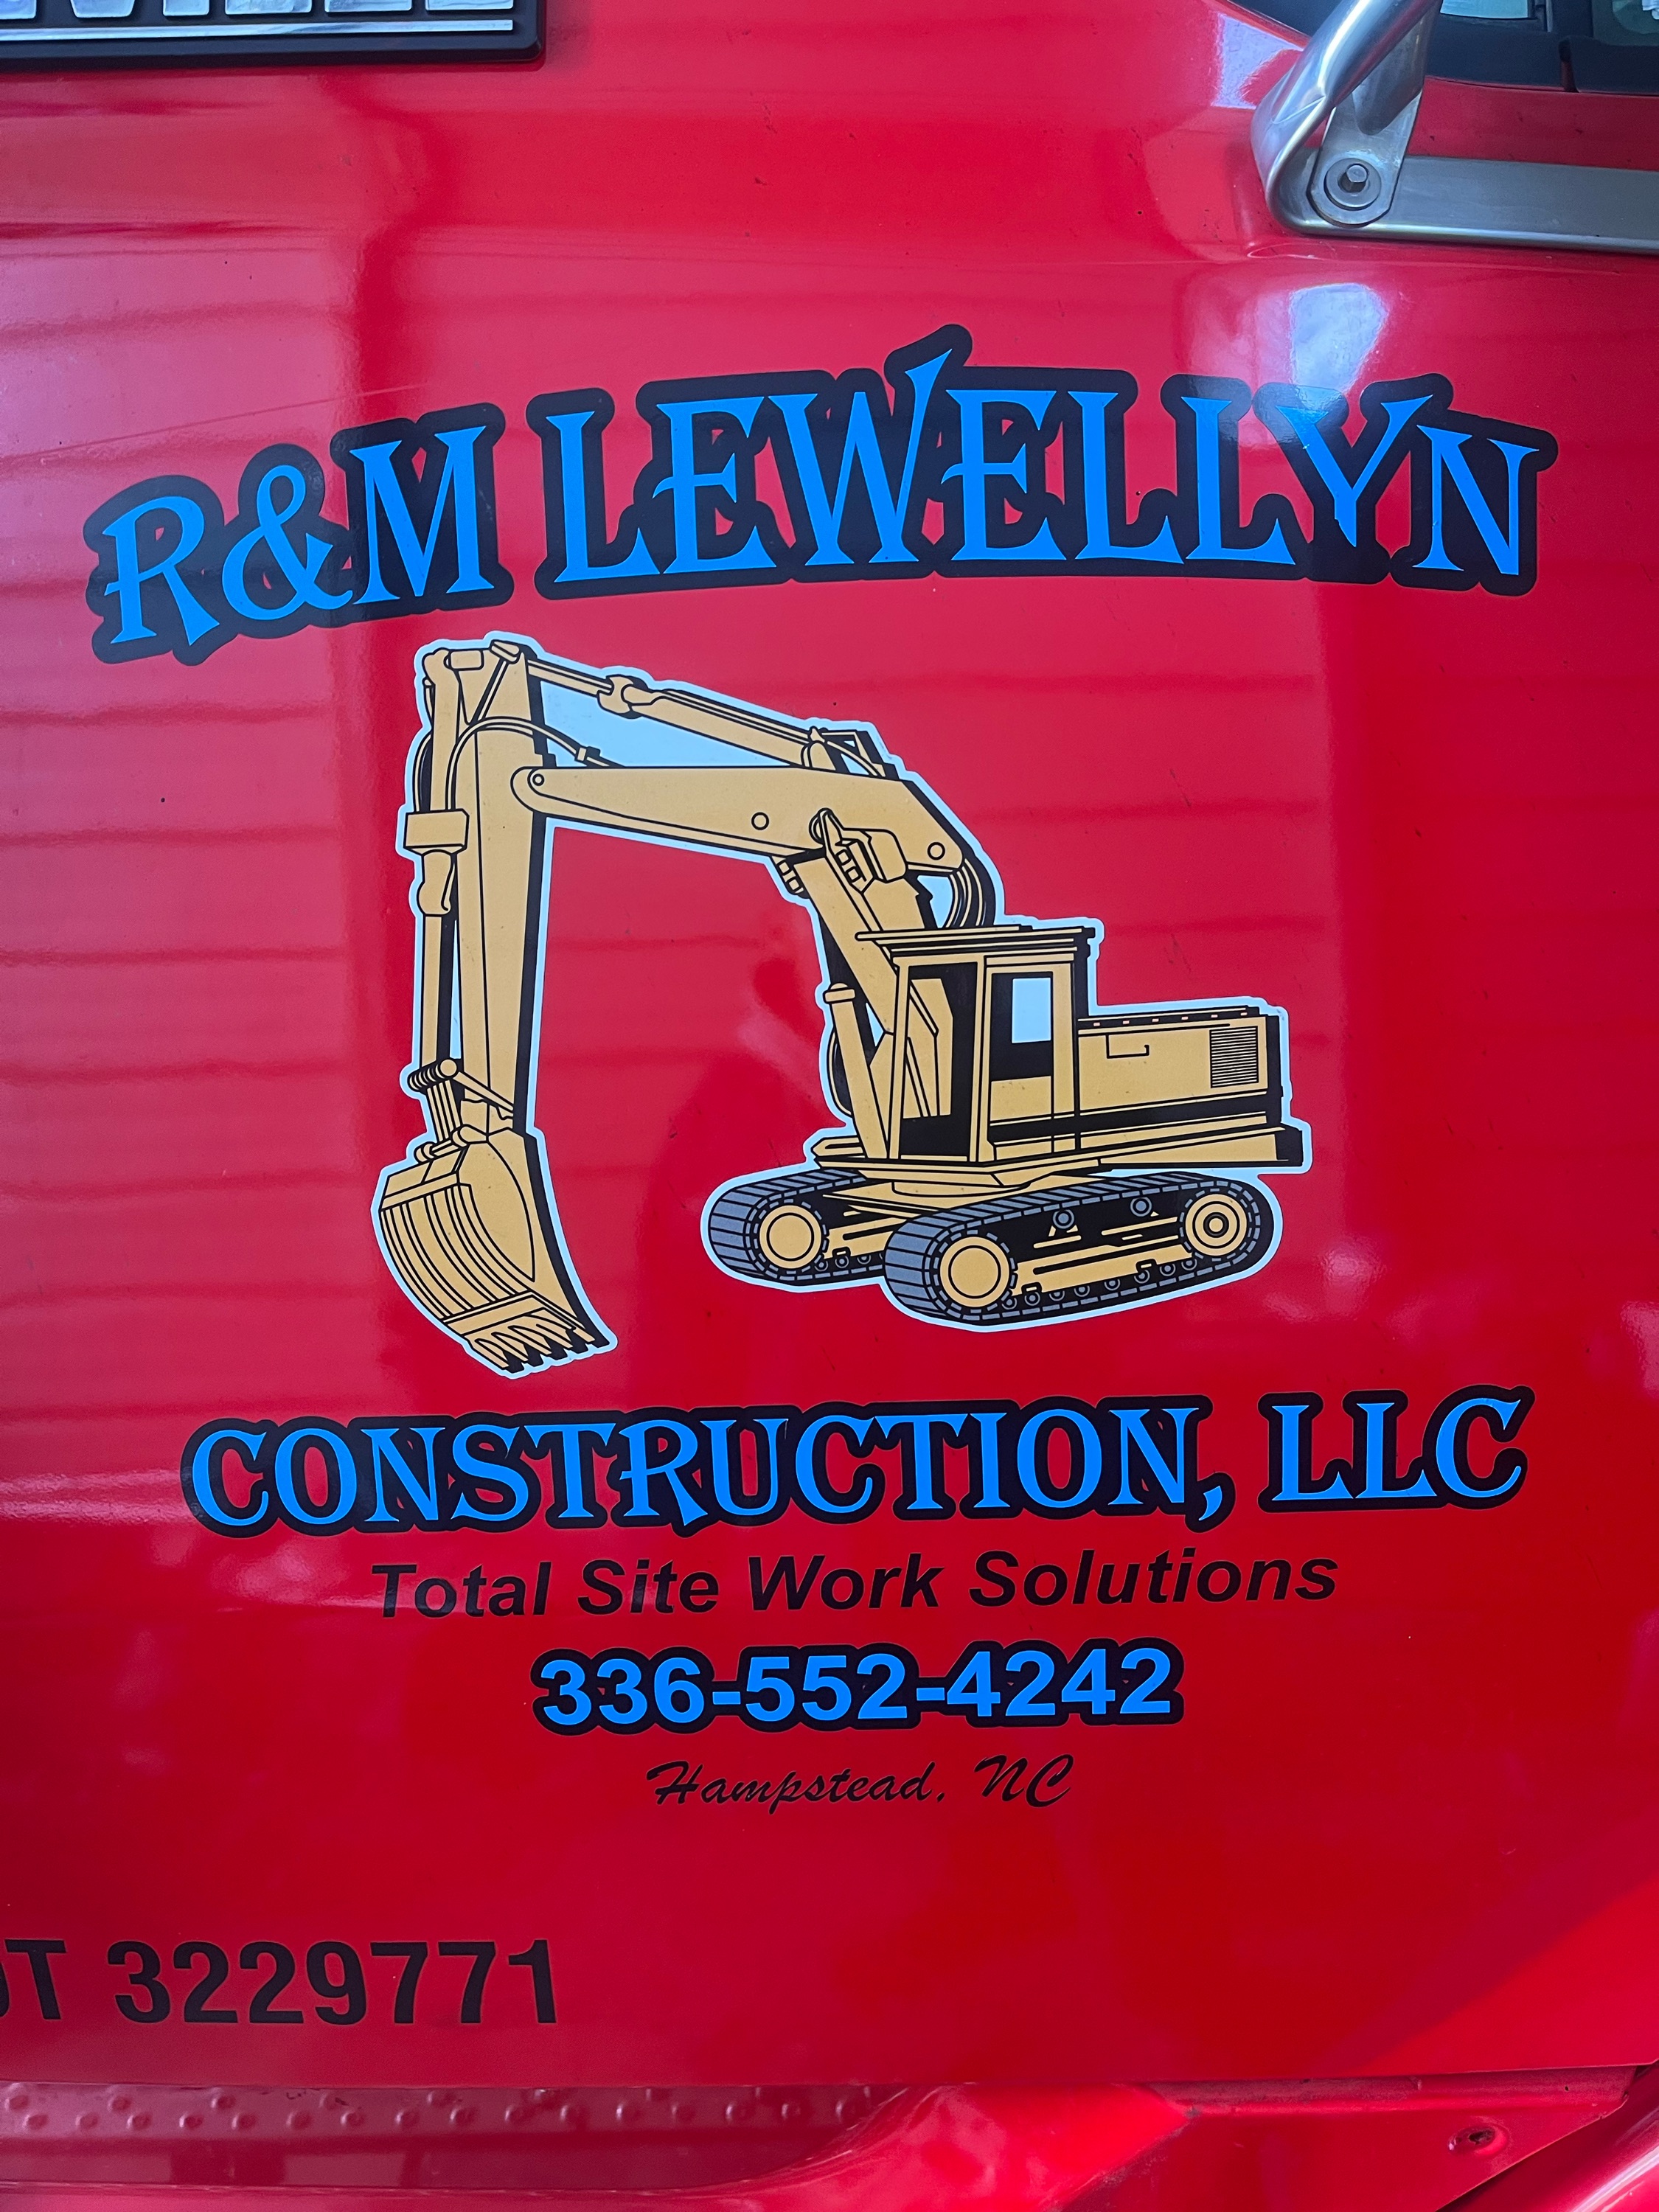 R&M Lewellyn Construction Logo